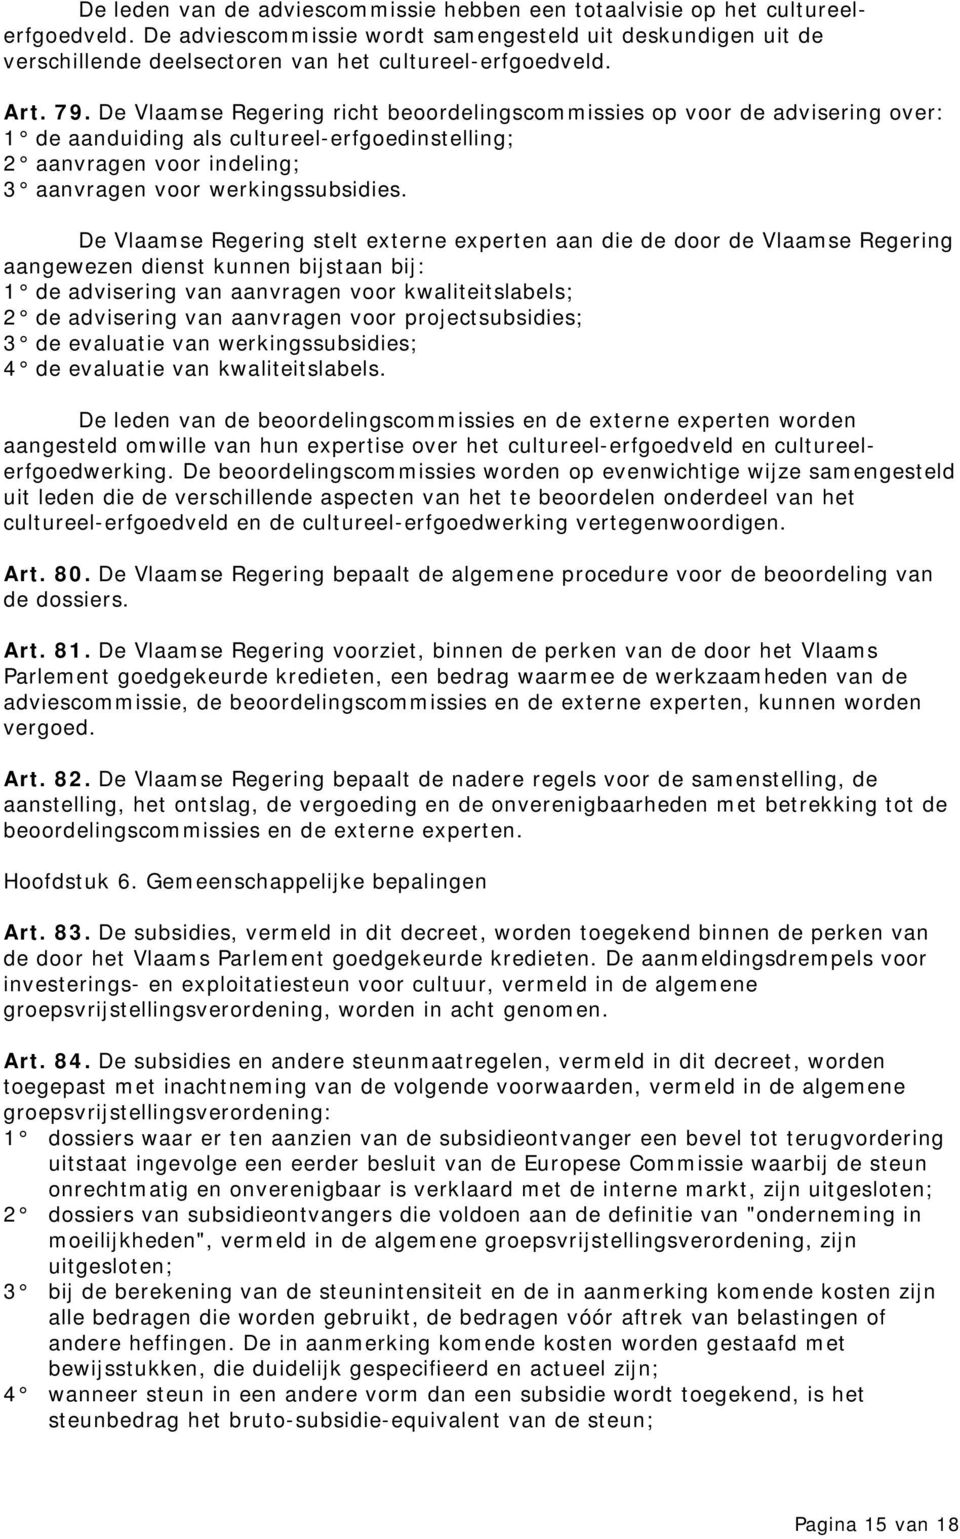 De Vlaamse Regering richt beoordelingscommissies op voor de advisering over: 1 de aanduiding als cultureel-erfgoedinstelling; 2 aanvragen voor indeling; 3 aanvragen voor werkingssubsidies.